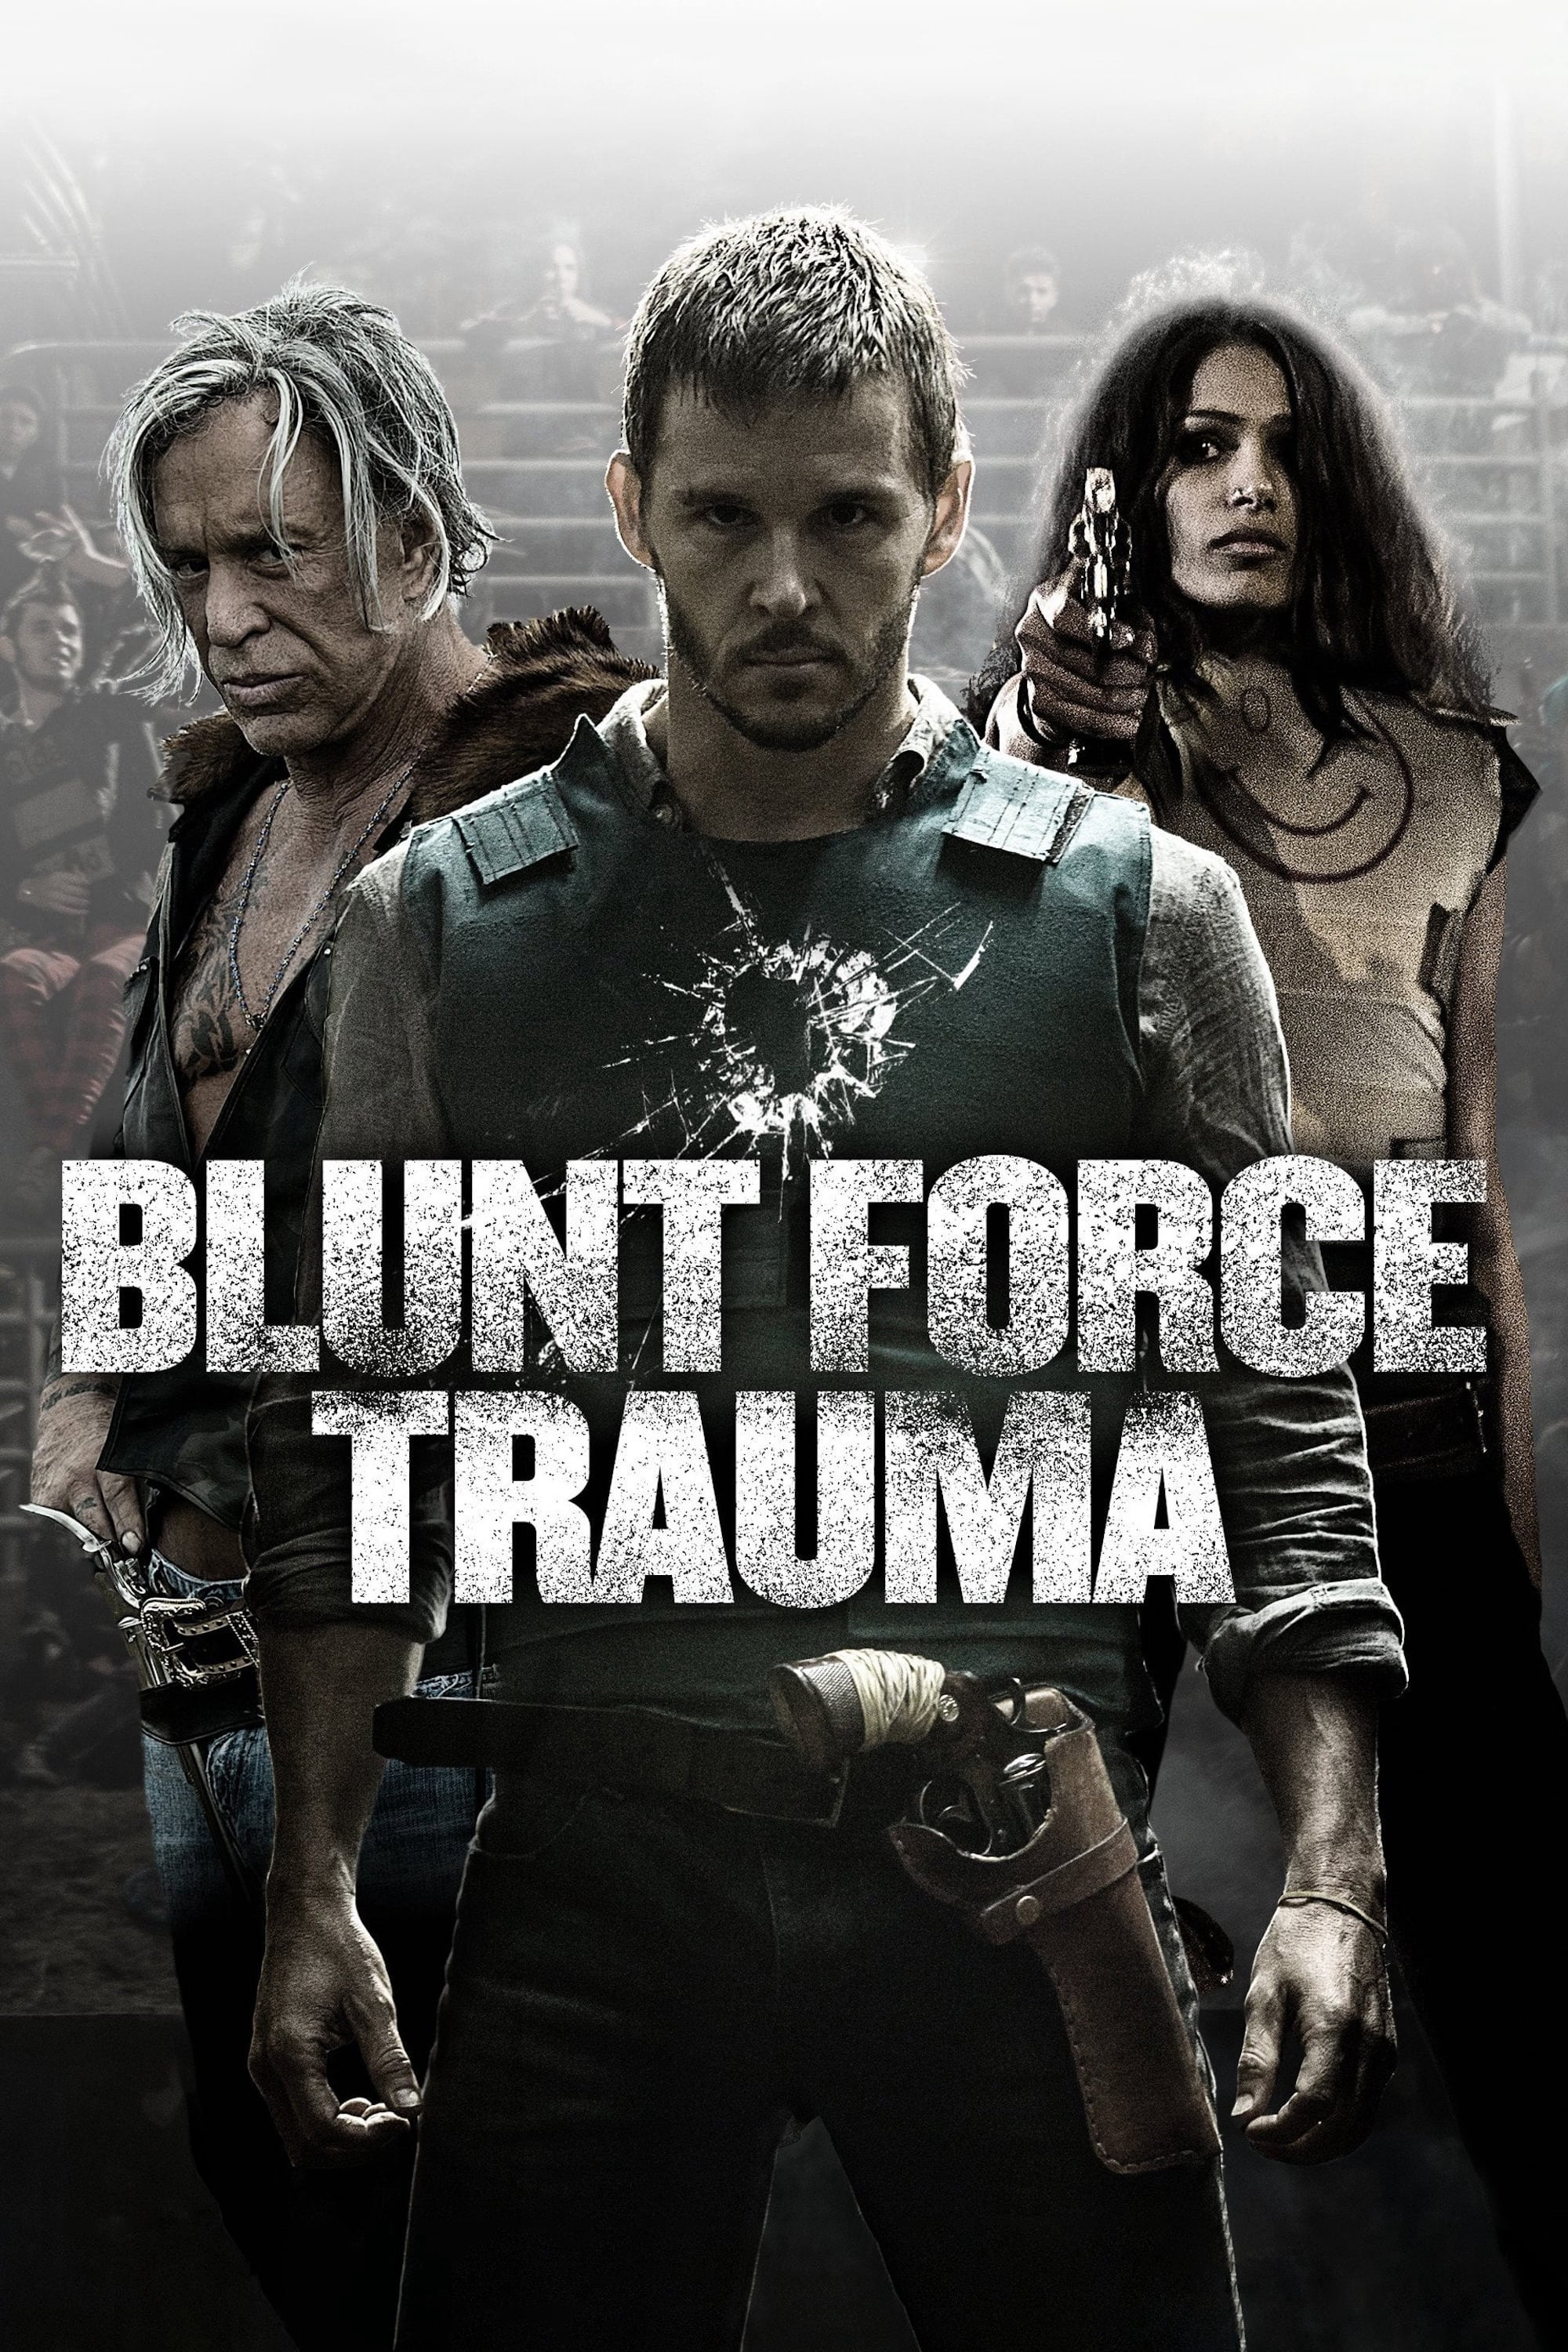 Poster Phim Lực Lượng Cận Chiến (Blunt Force Trauma)